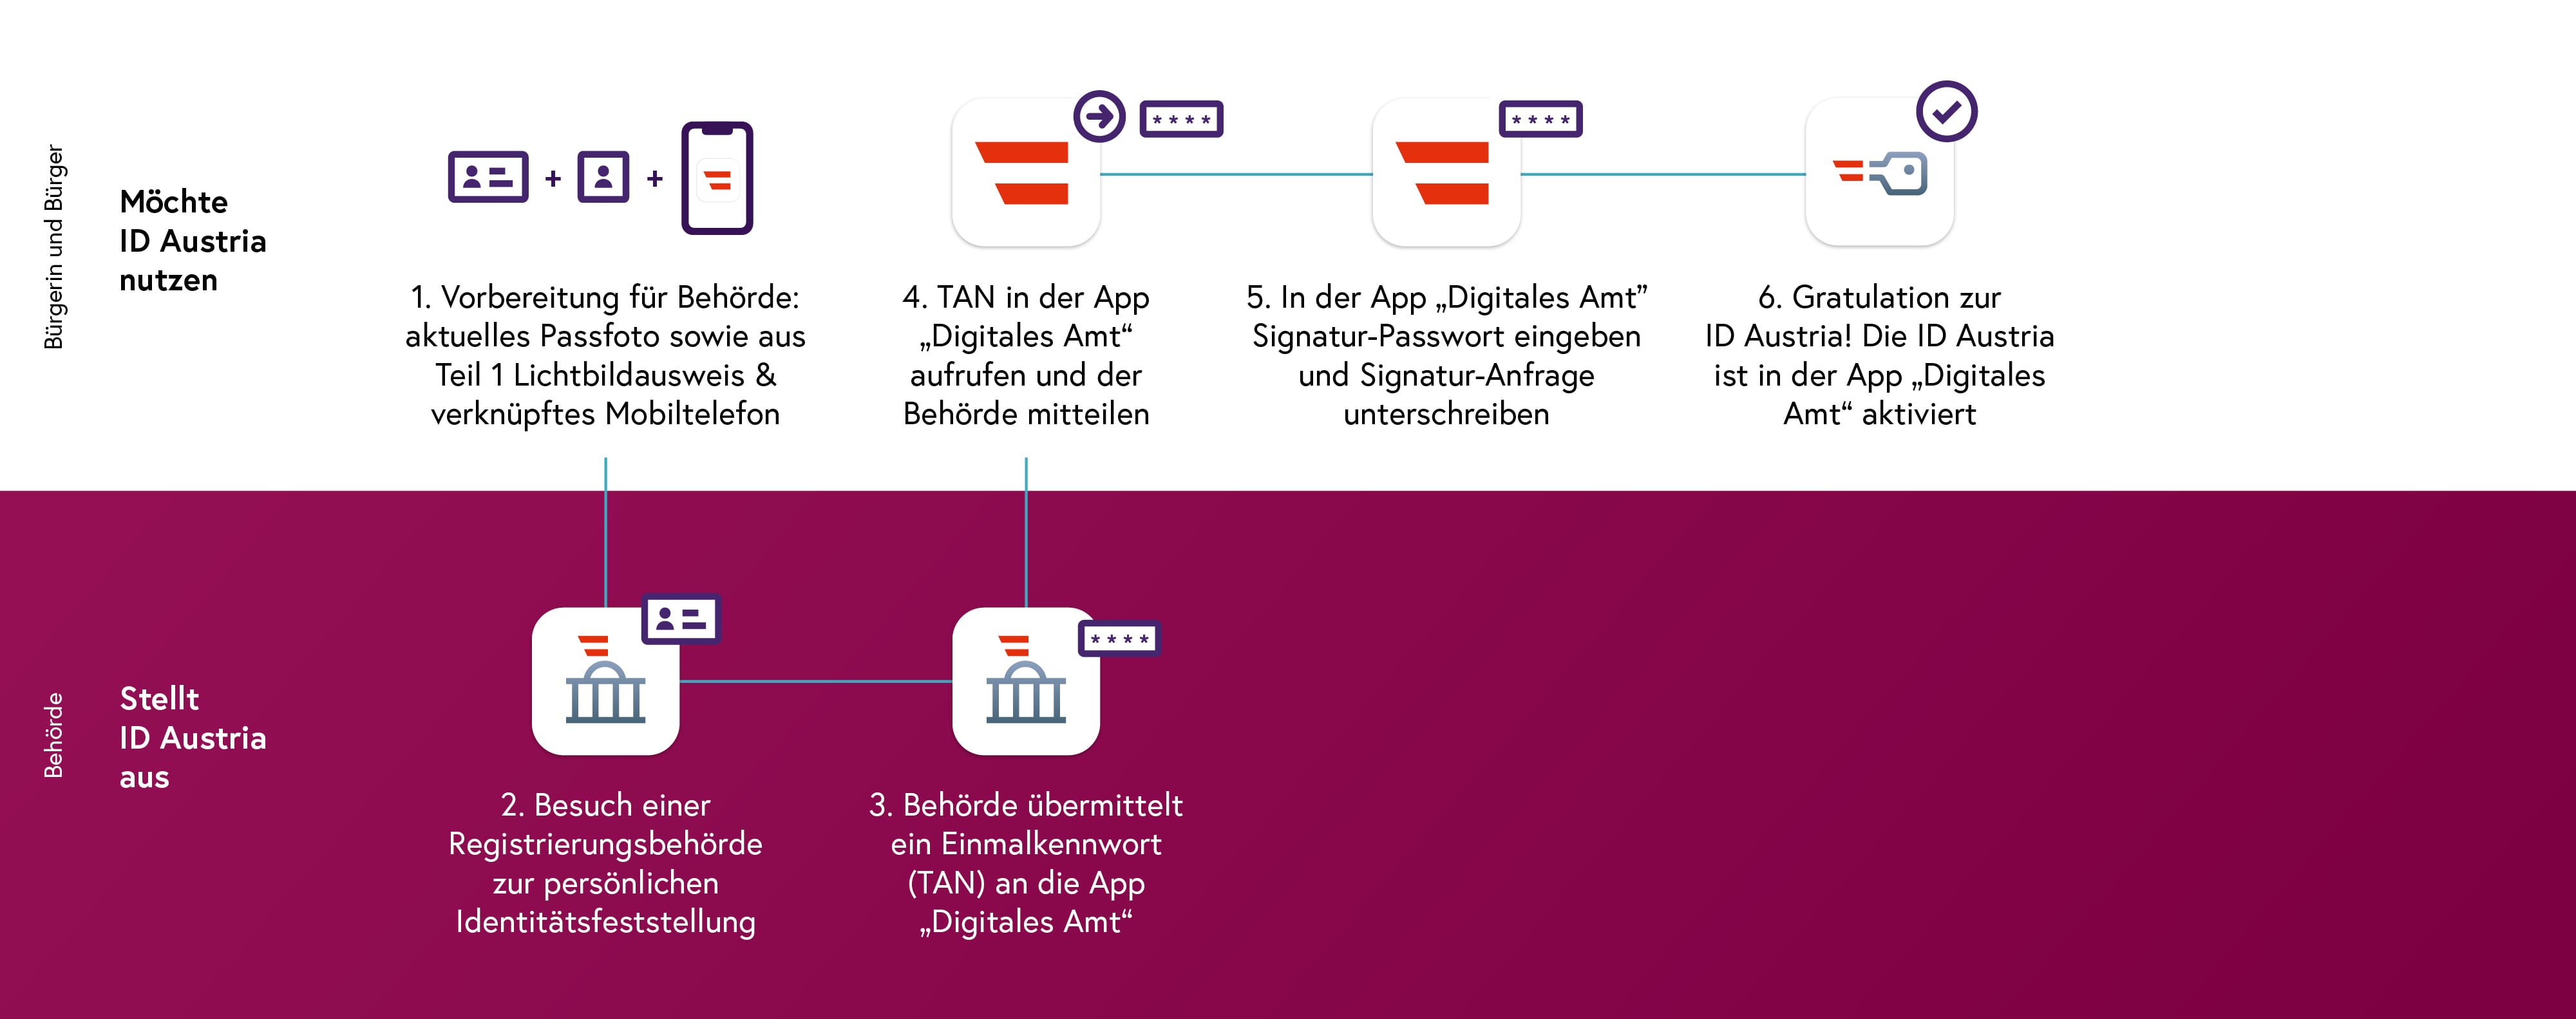 Illustration des Ablaufs des Teil 2: Registrierungsprozess bei der Behörde in 6 Schritten